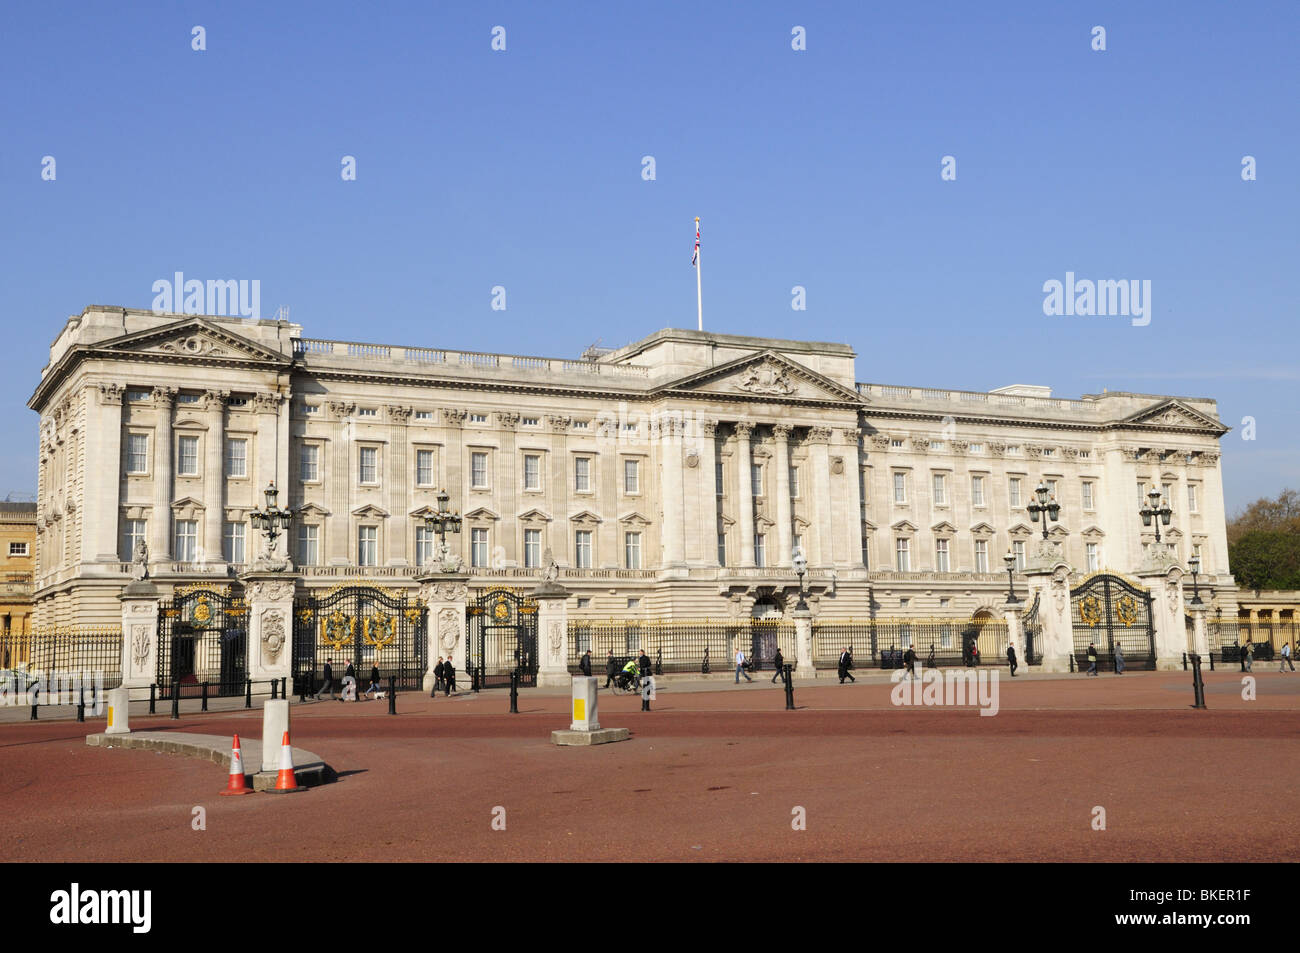 Buckingham Palace, London, England, UK Stock Photo